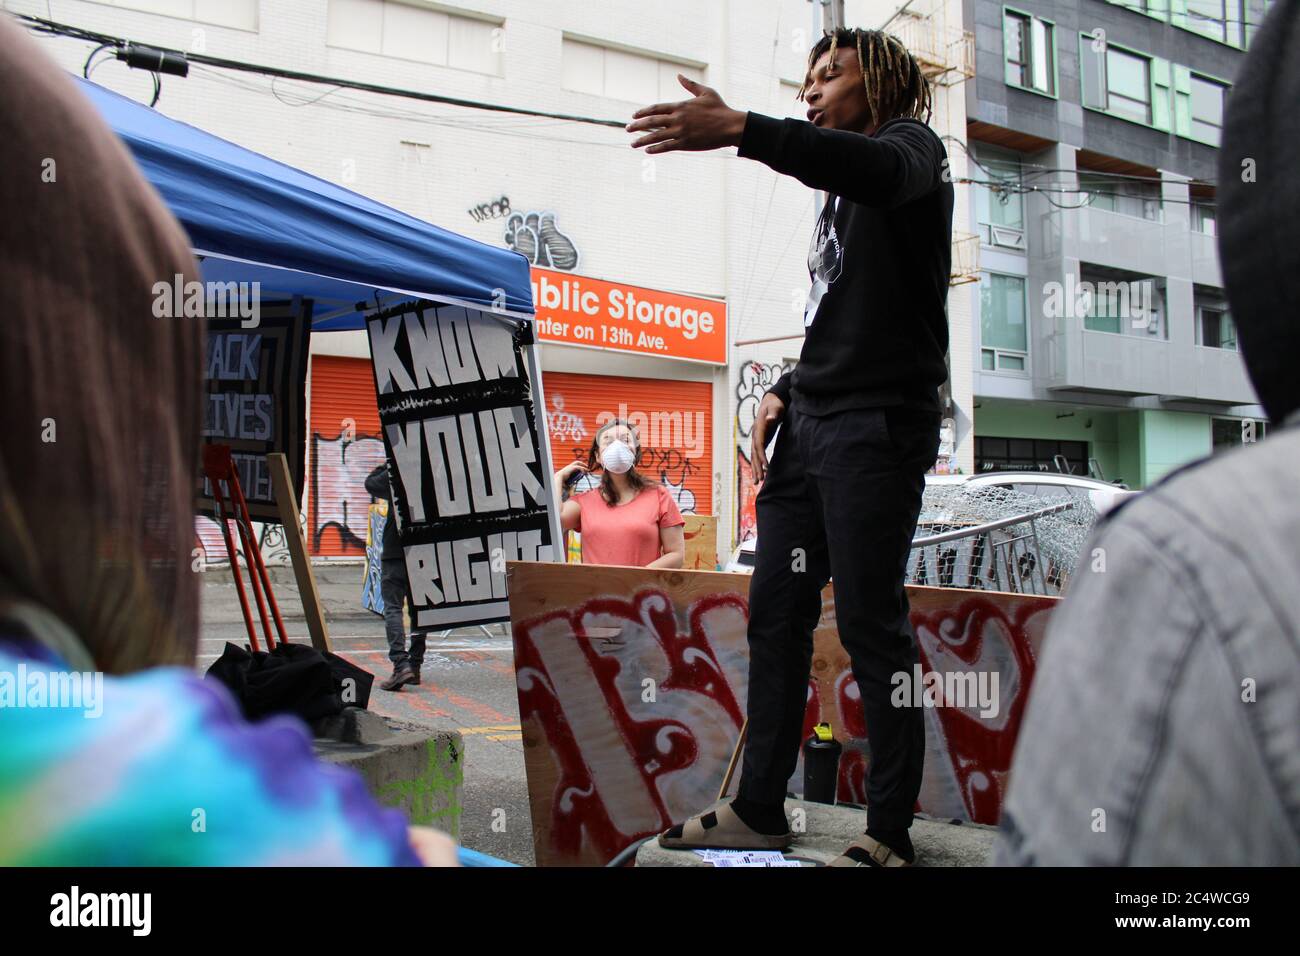 27. Juni 2020, Seattle, Washington, USA: Bildunterschrift: 27. Juni 2020, Seattle, Washington: Demonstranten entfernen die eisernen Griffe, mit denen die Zementbarrieren angehoben werden, um es den Stadtarbeitern zu erschweren, sie zu entfernen, wie der Bürgermeister Seattle am Vortag angedroht hat, Um die vom Capitol Hill besetzte Protestzone zu öffnen, die seit dem 8. Juni unter der Kontrolle von Black Life-Demonstranten, Antifa (Anti-Faschismus-Gruppe) und anderen Anti-Rassismus-Anhängern steht. Die Demonstranten haben beschlossen, dass sie nicht gehen werden, bis mehr ihrer Forderungen erfüllt sind, und rufen die Anhänger auf, wie sie vorbereitet sind, zurückzukehren Stockfoto